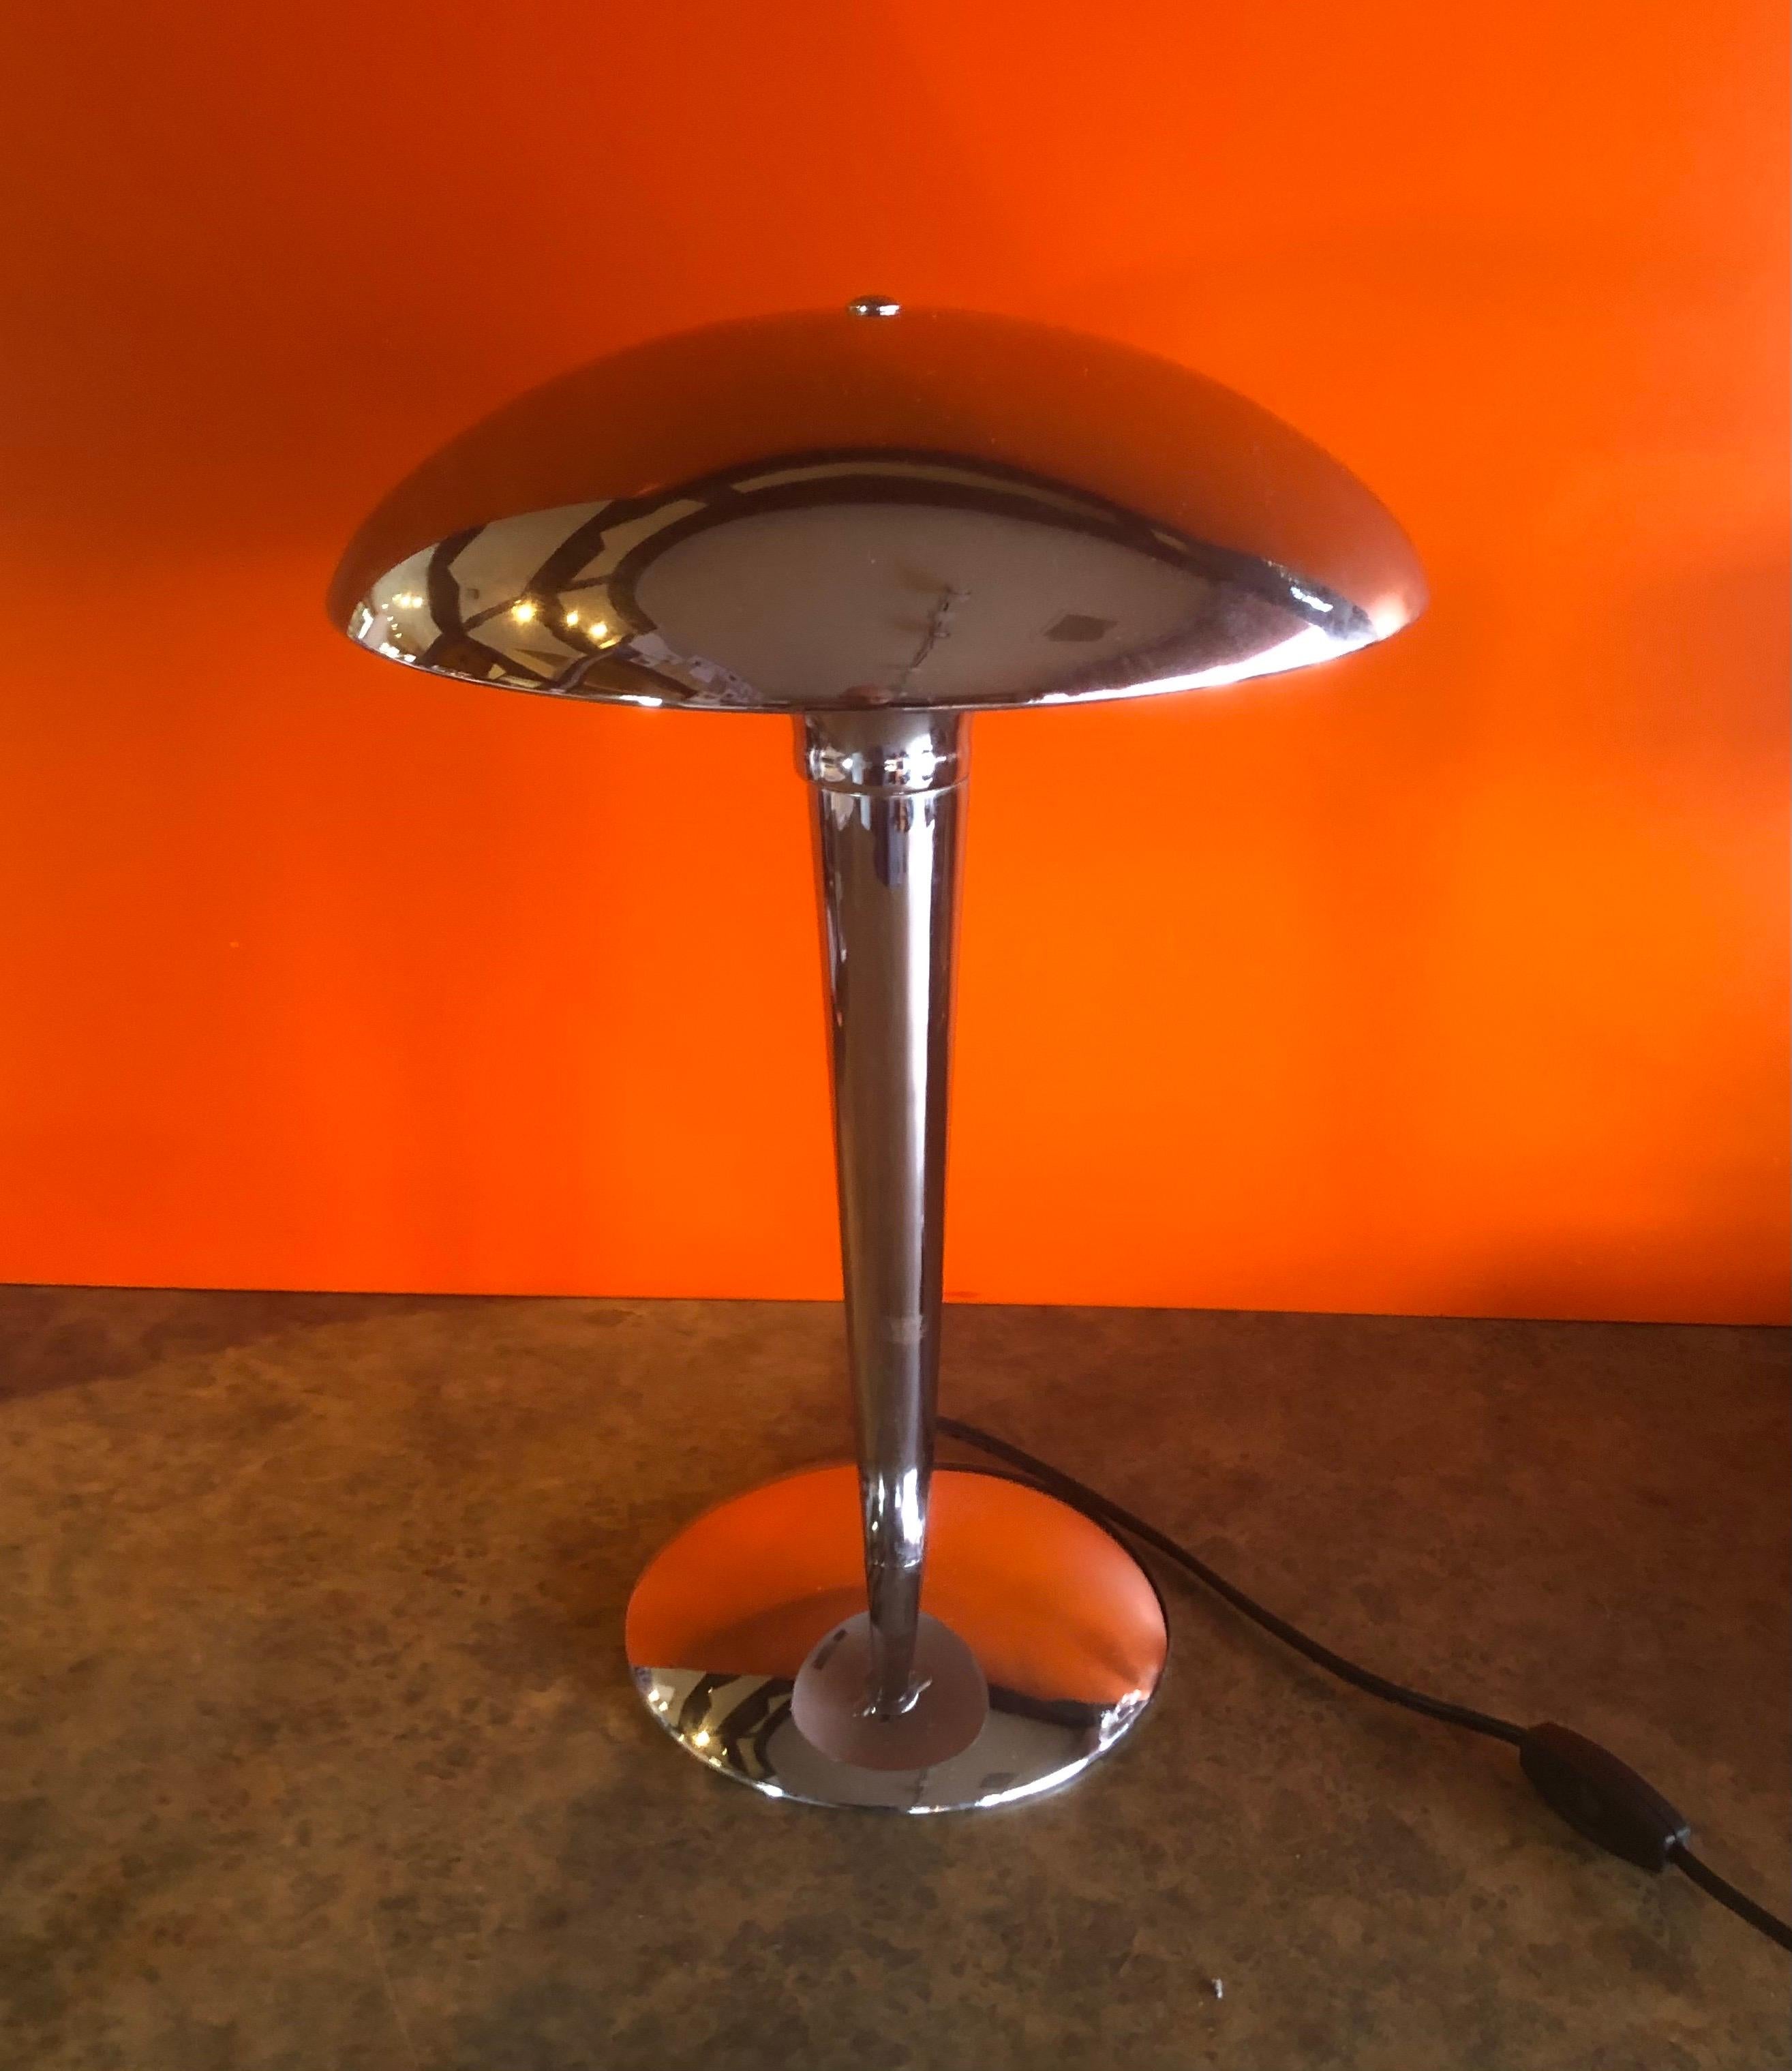 Lampe de table en chrome Space AGE avec abat-jour en forme de champignon, vers les années 1970. La lampe est de fabrication américaine et en très bon état vintage, elle mesure 13